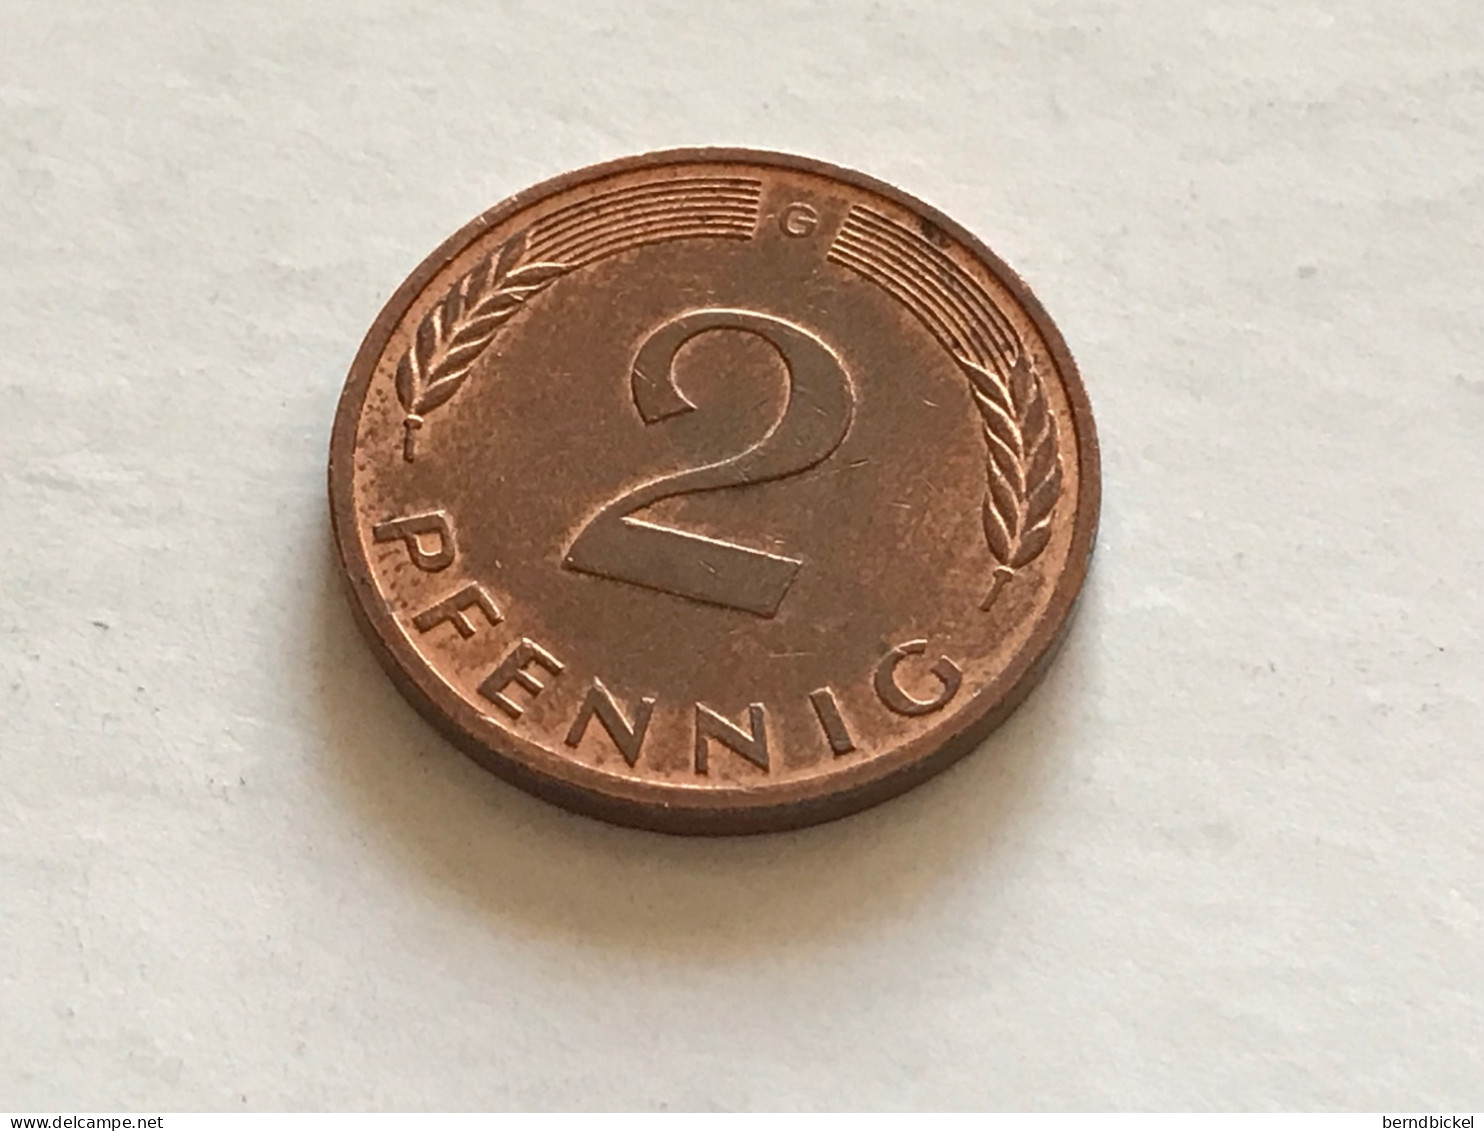 Münze Münzen Umlaufmünze Deutschland 2 Pfennig 1992 Münzzeichen G - 2 Pfennig